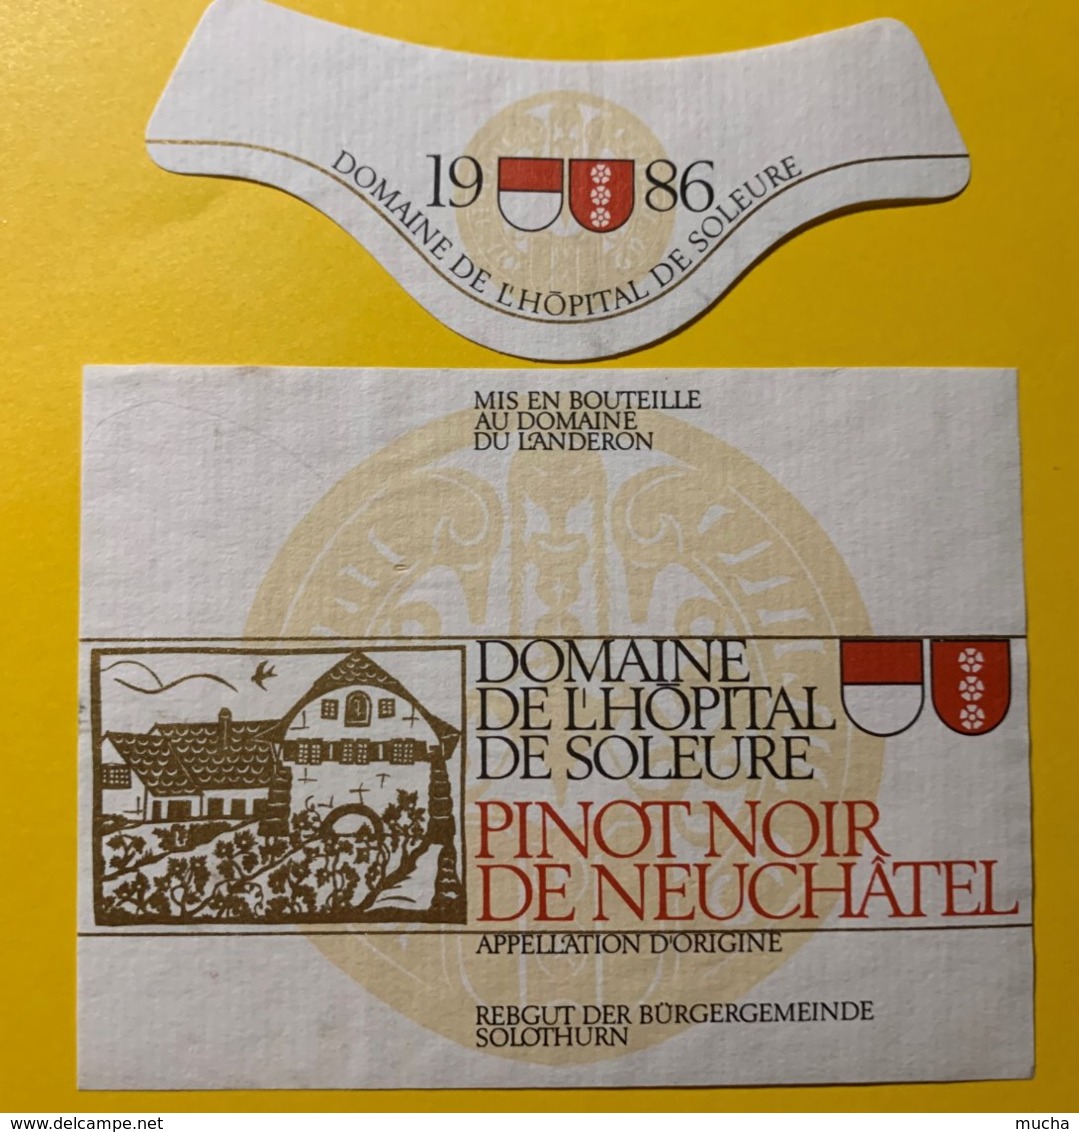 12148 - Pinot Noir De Neuchâtel 1986 Domaine De L'Hôpital De Soleure Suisse - Art